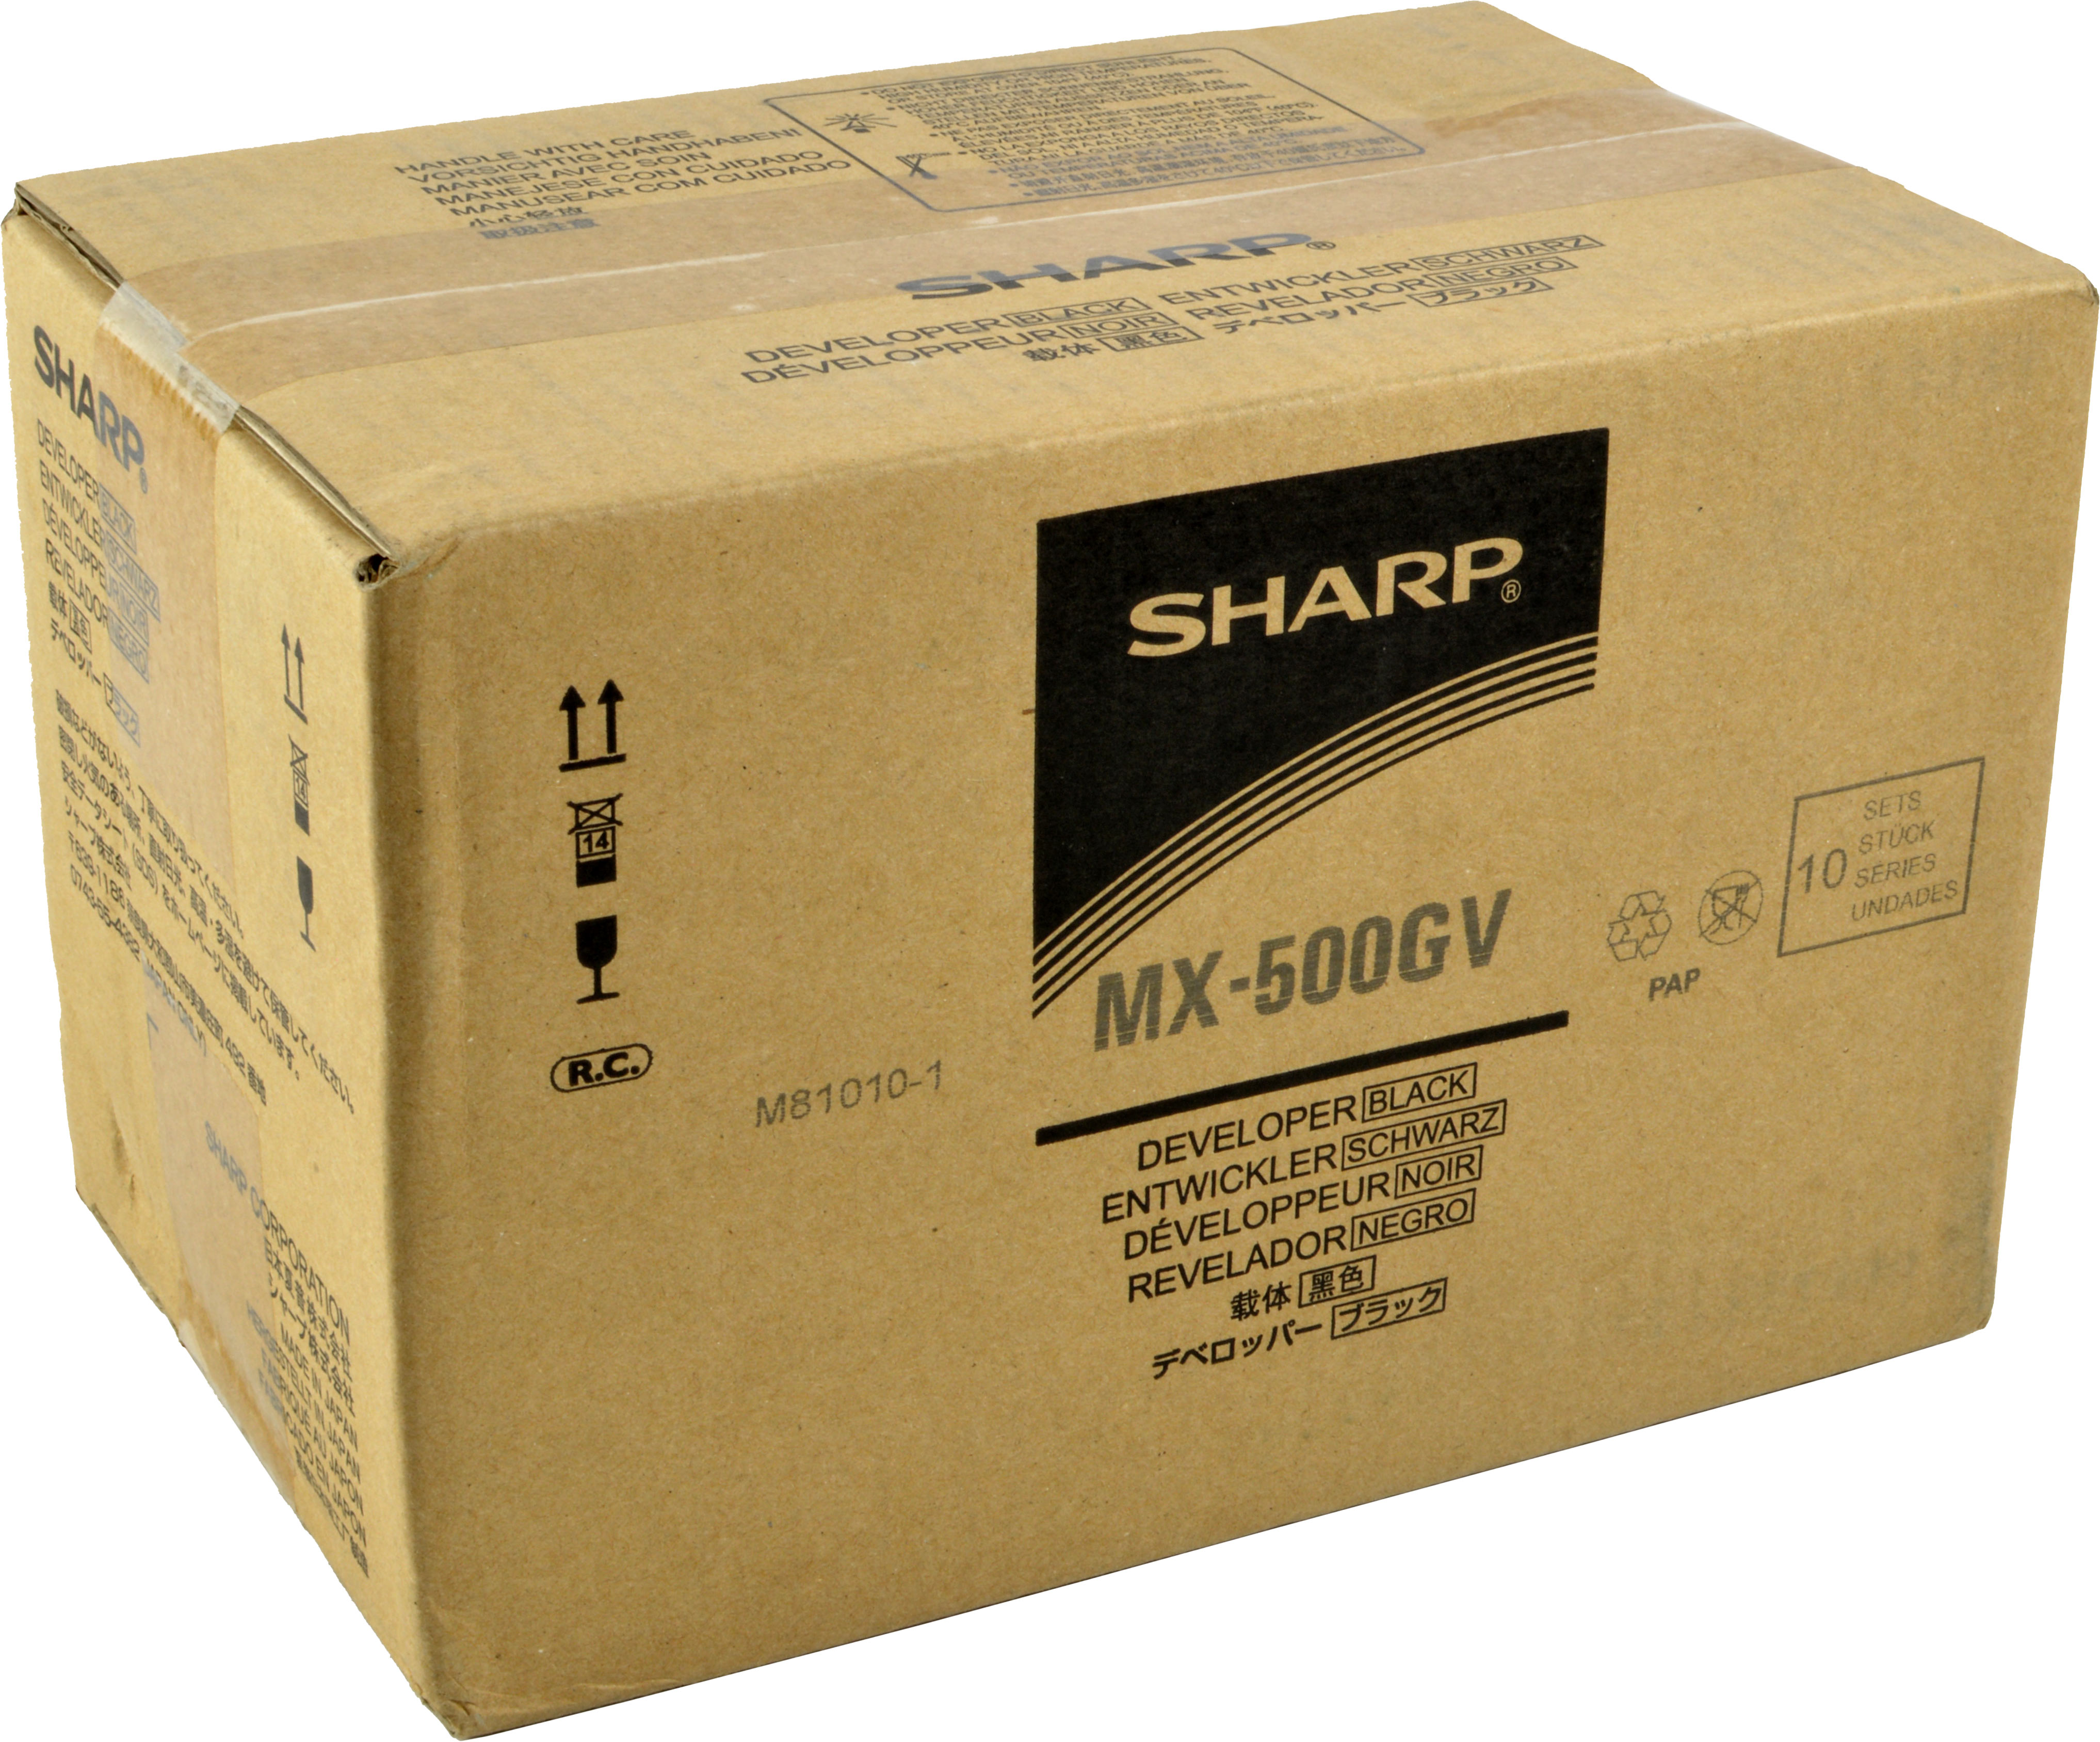 SHARP MX-500GV Zubehör schwarz (MX-500GV)